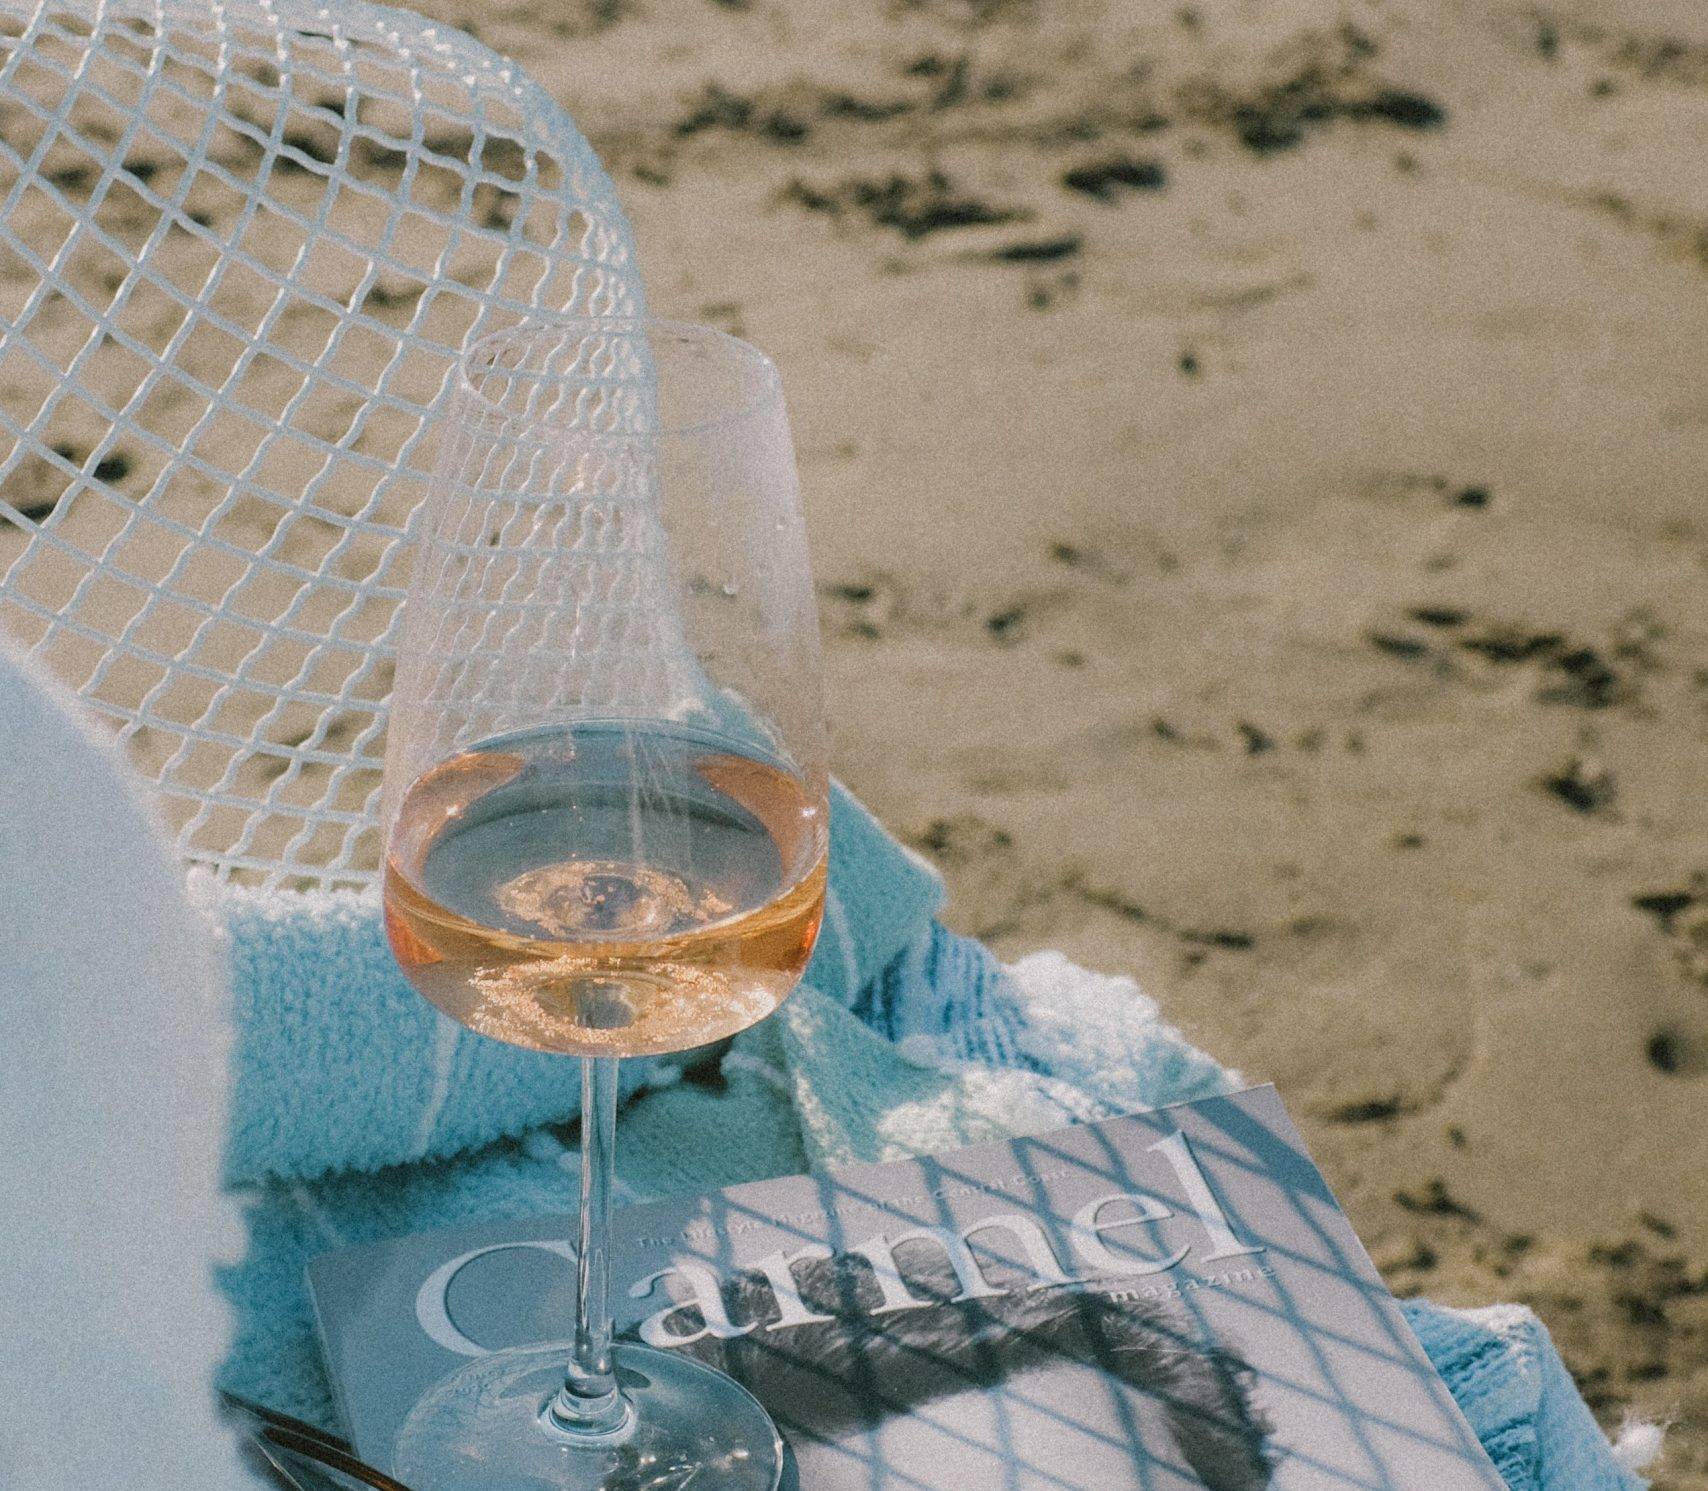 Grab a Bottle - After Beach Bubbles!